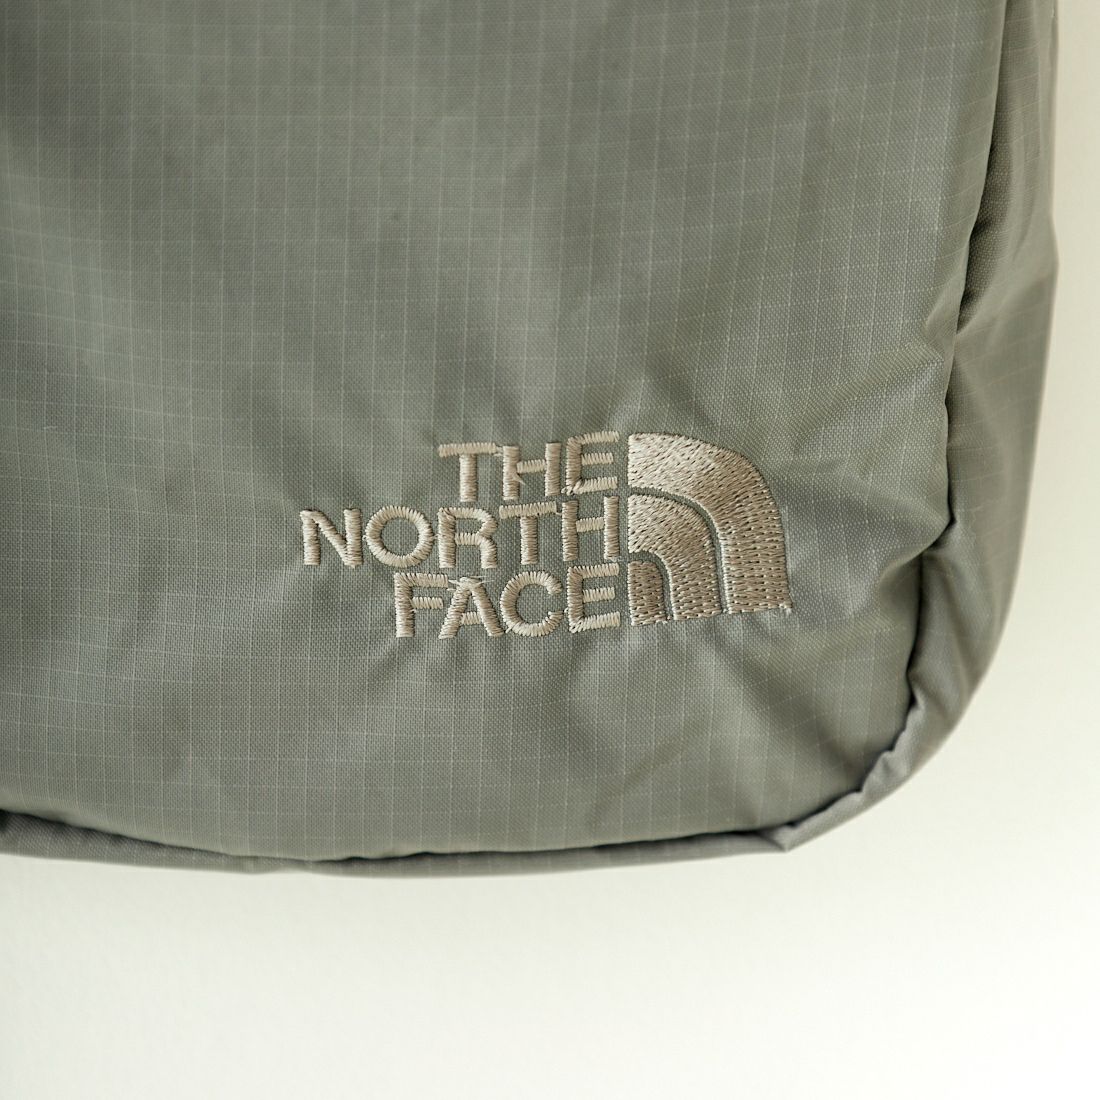 THE NORTH FACE [ザ ノースフェイス] グラムショルダー [NM32360] SP